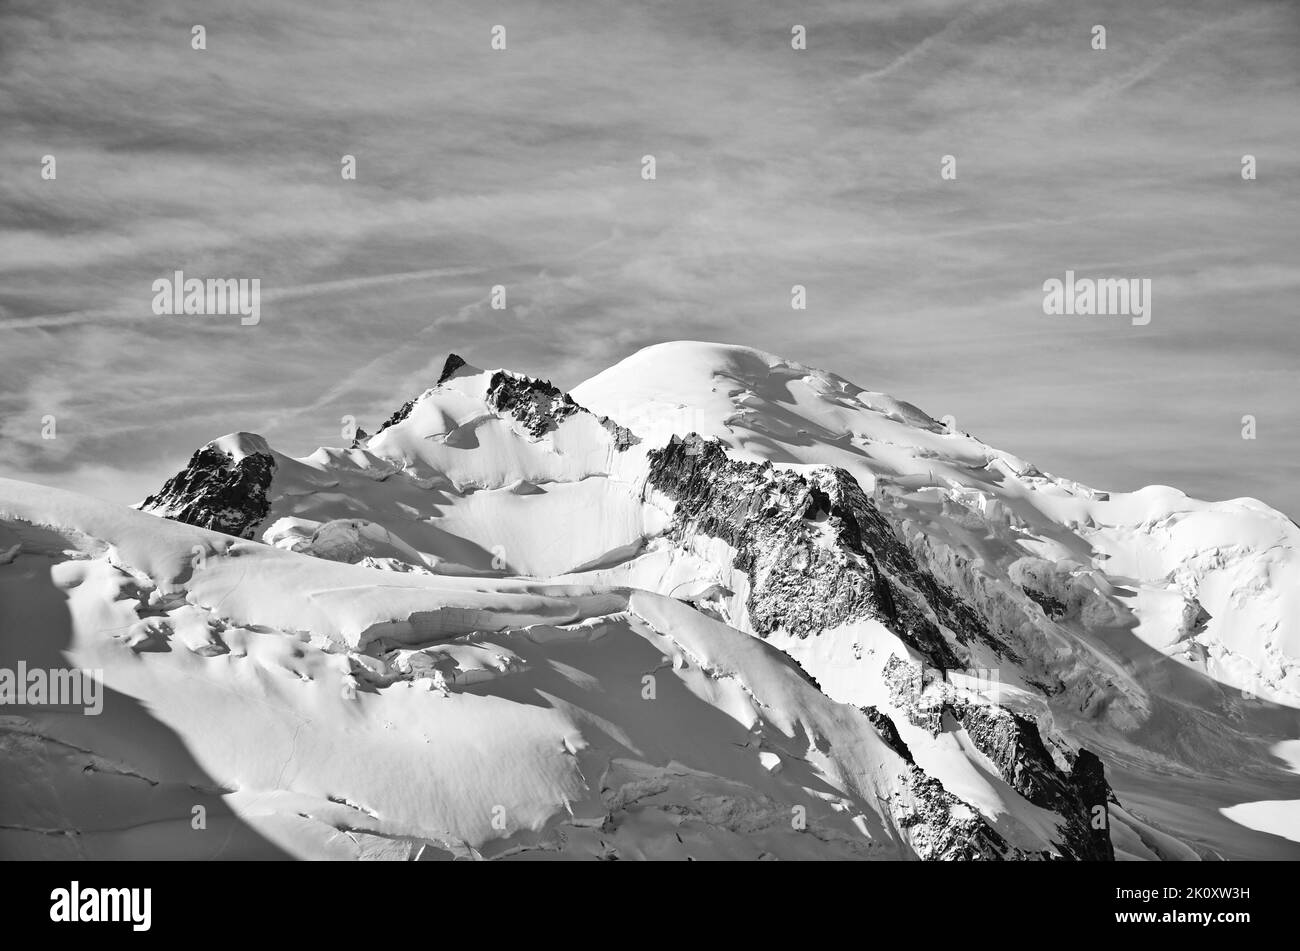 Toller Blick auf den Berg: Monte Blanc vom Aiguille du Midi. Chamonix Frankreich. Bergsteigen über dem Gletscher Stockfoto